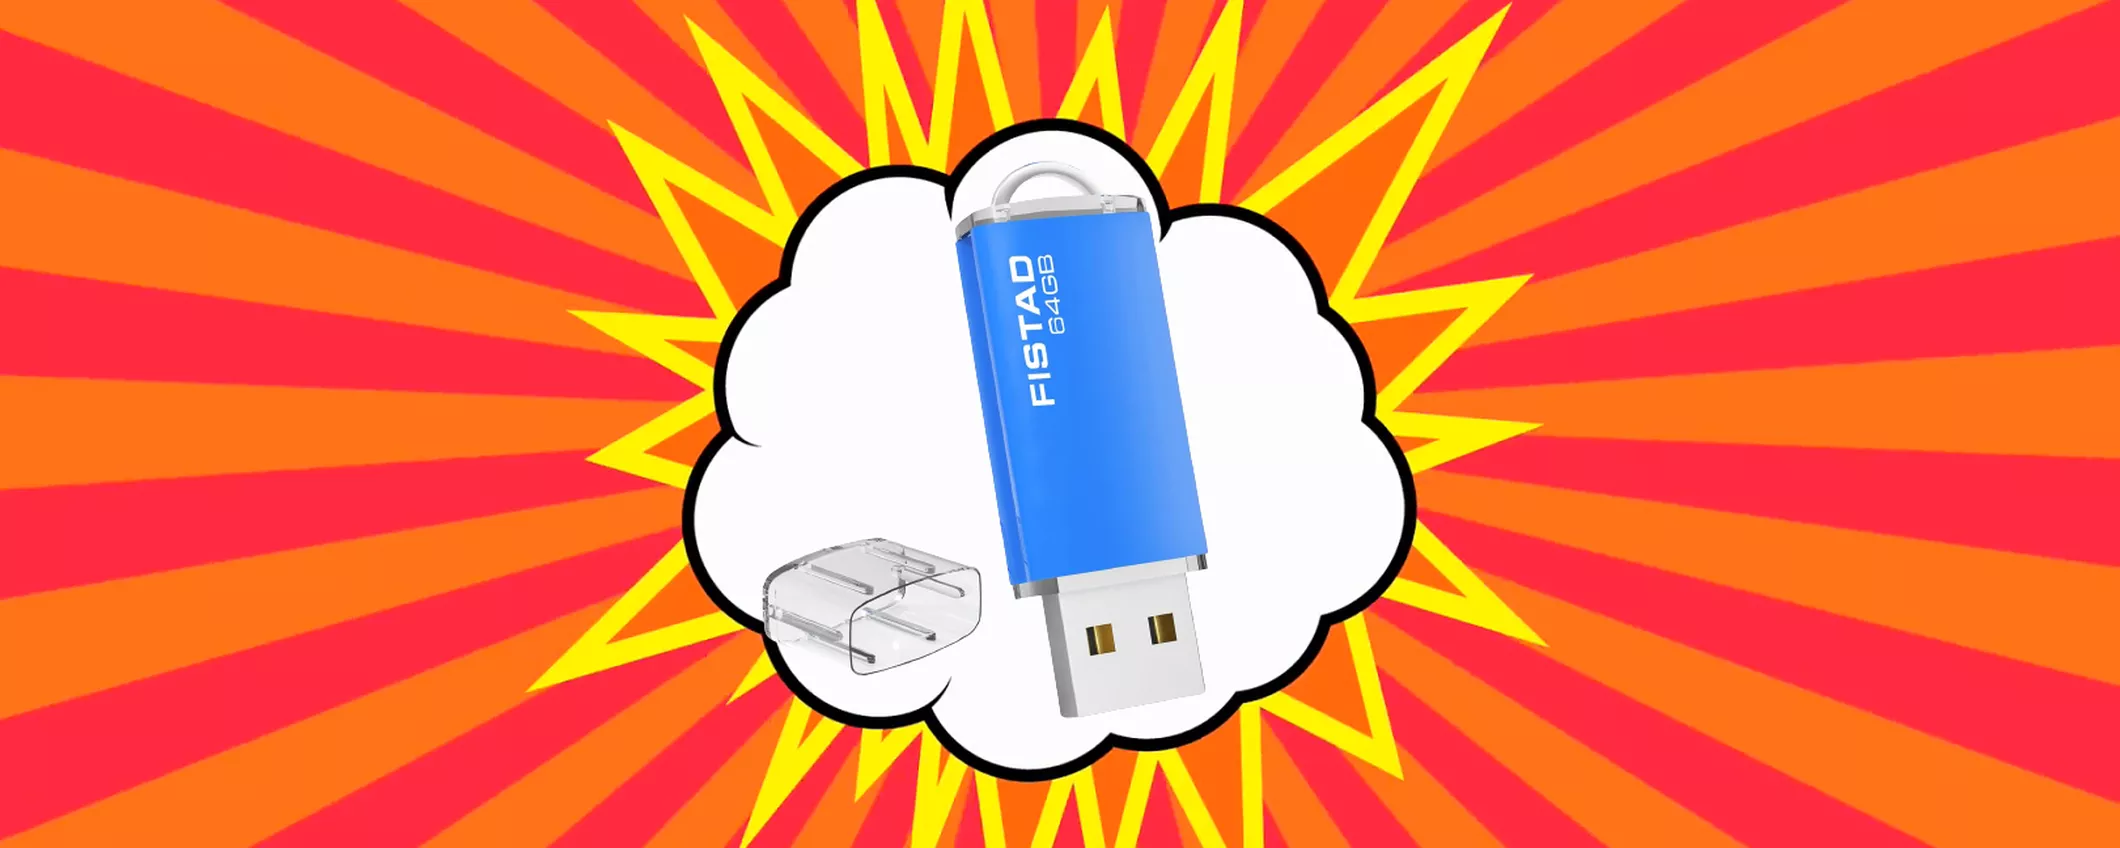 BASTANO 5 EURO per la Chiavetta USB da 64GB: offerta ASSURDA su Amazon